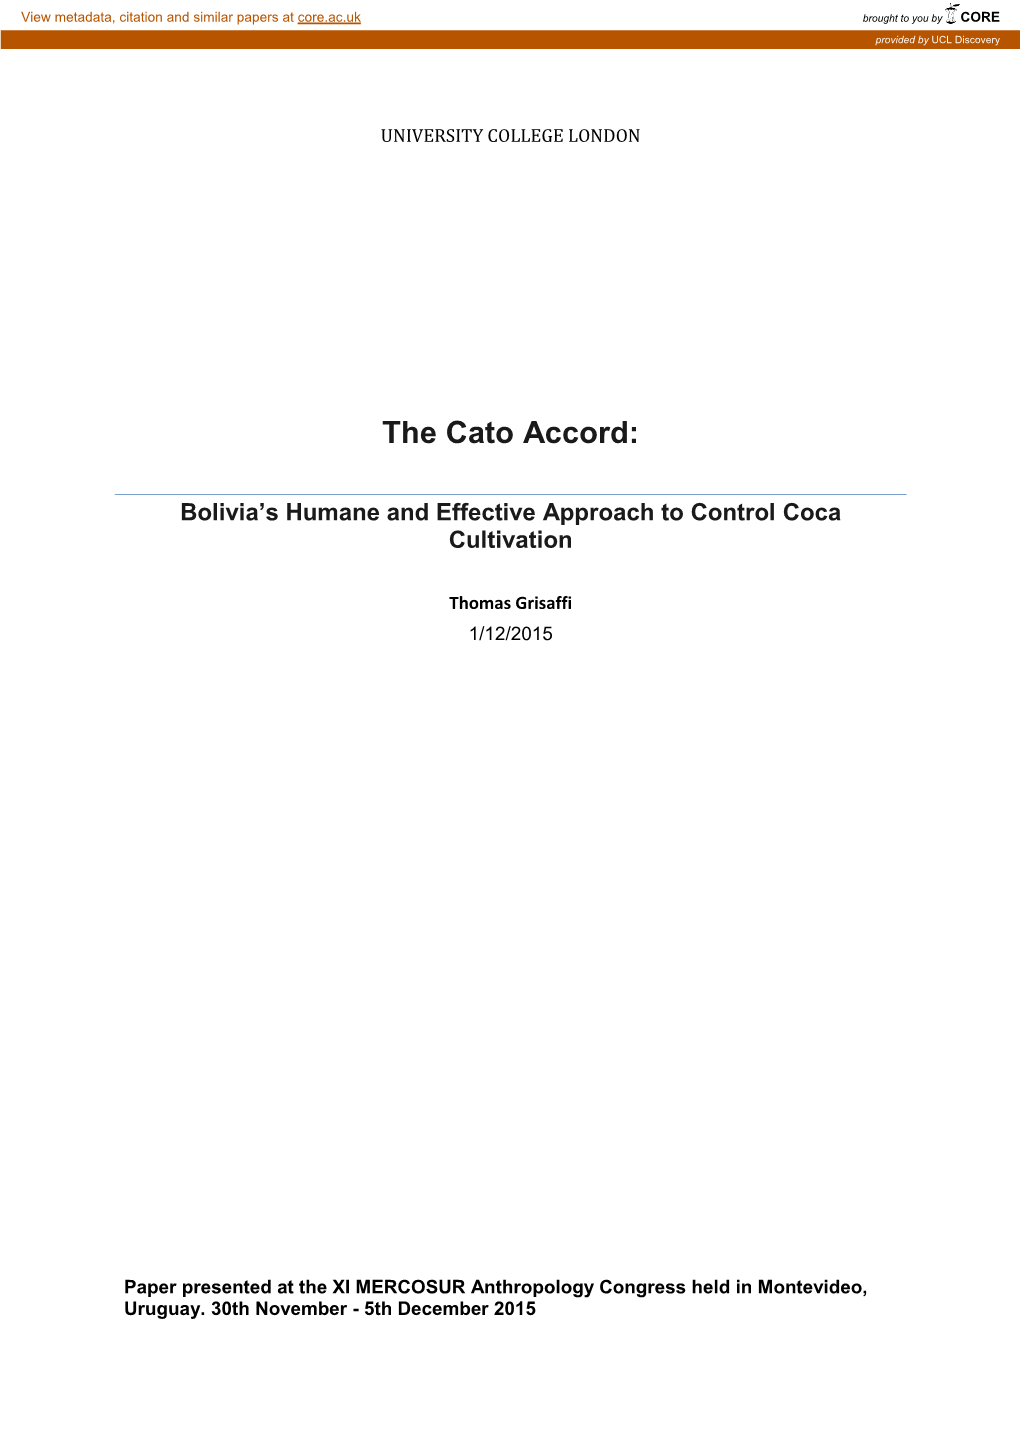 The Cato Accord